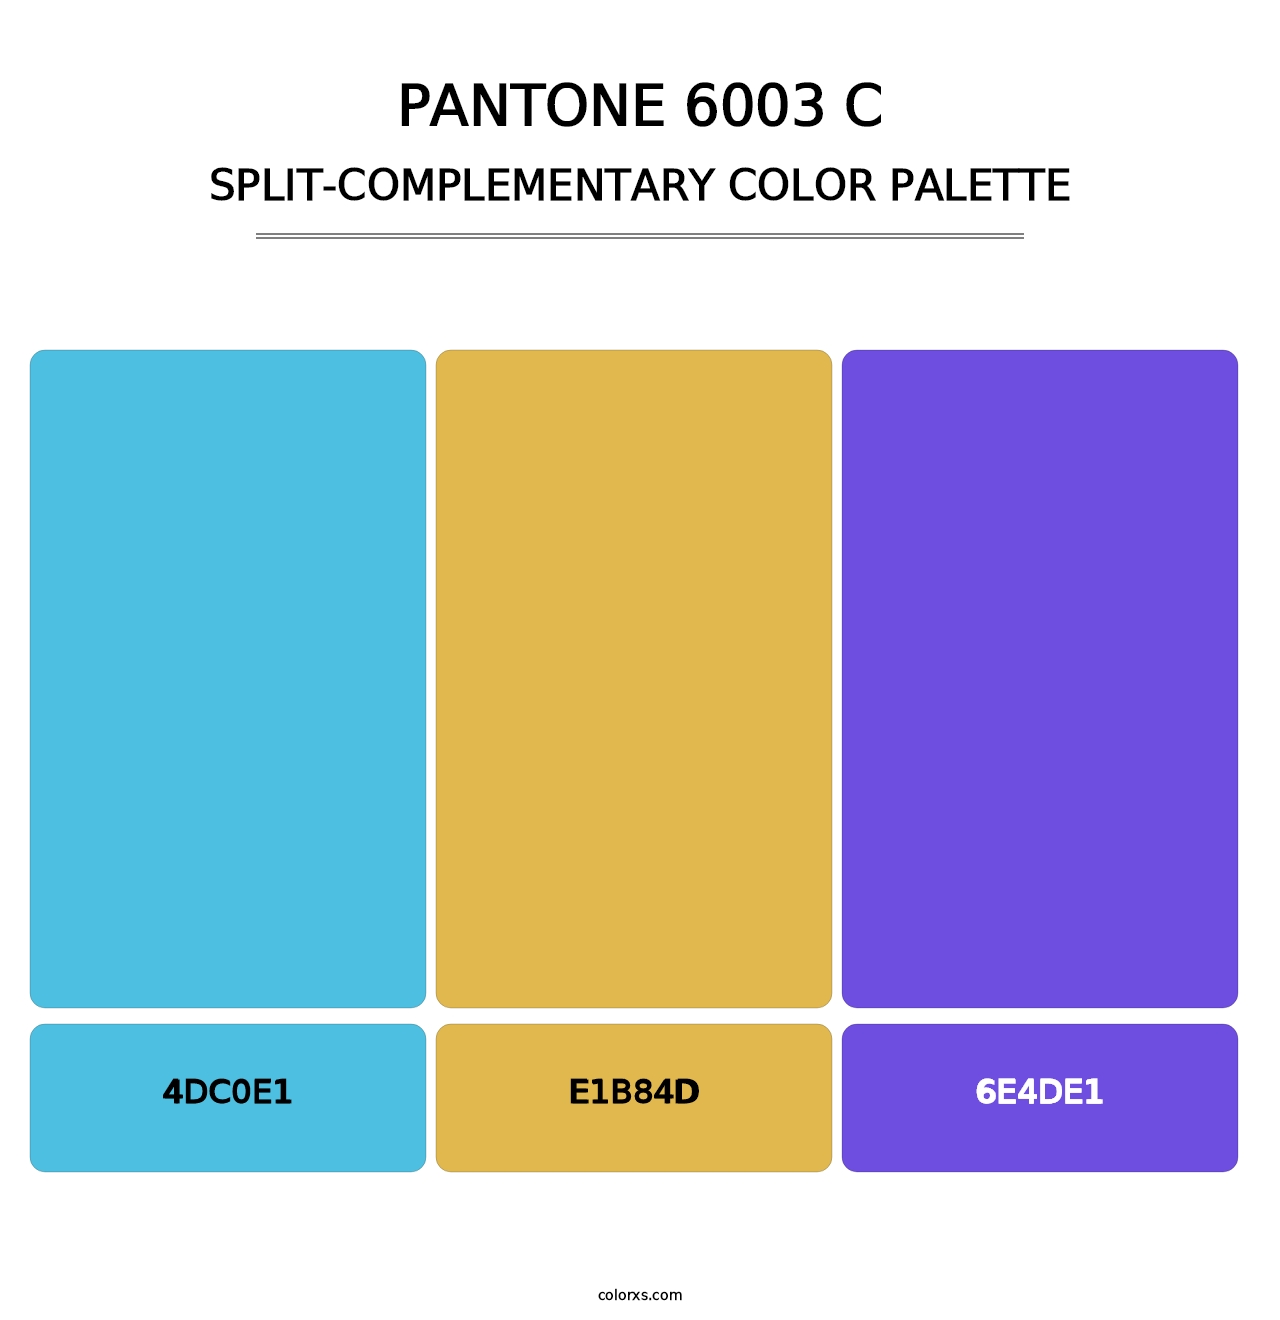 PANTONE 6003 C - Split-Complementary Color Palette